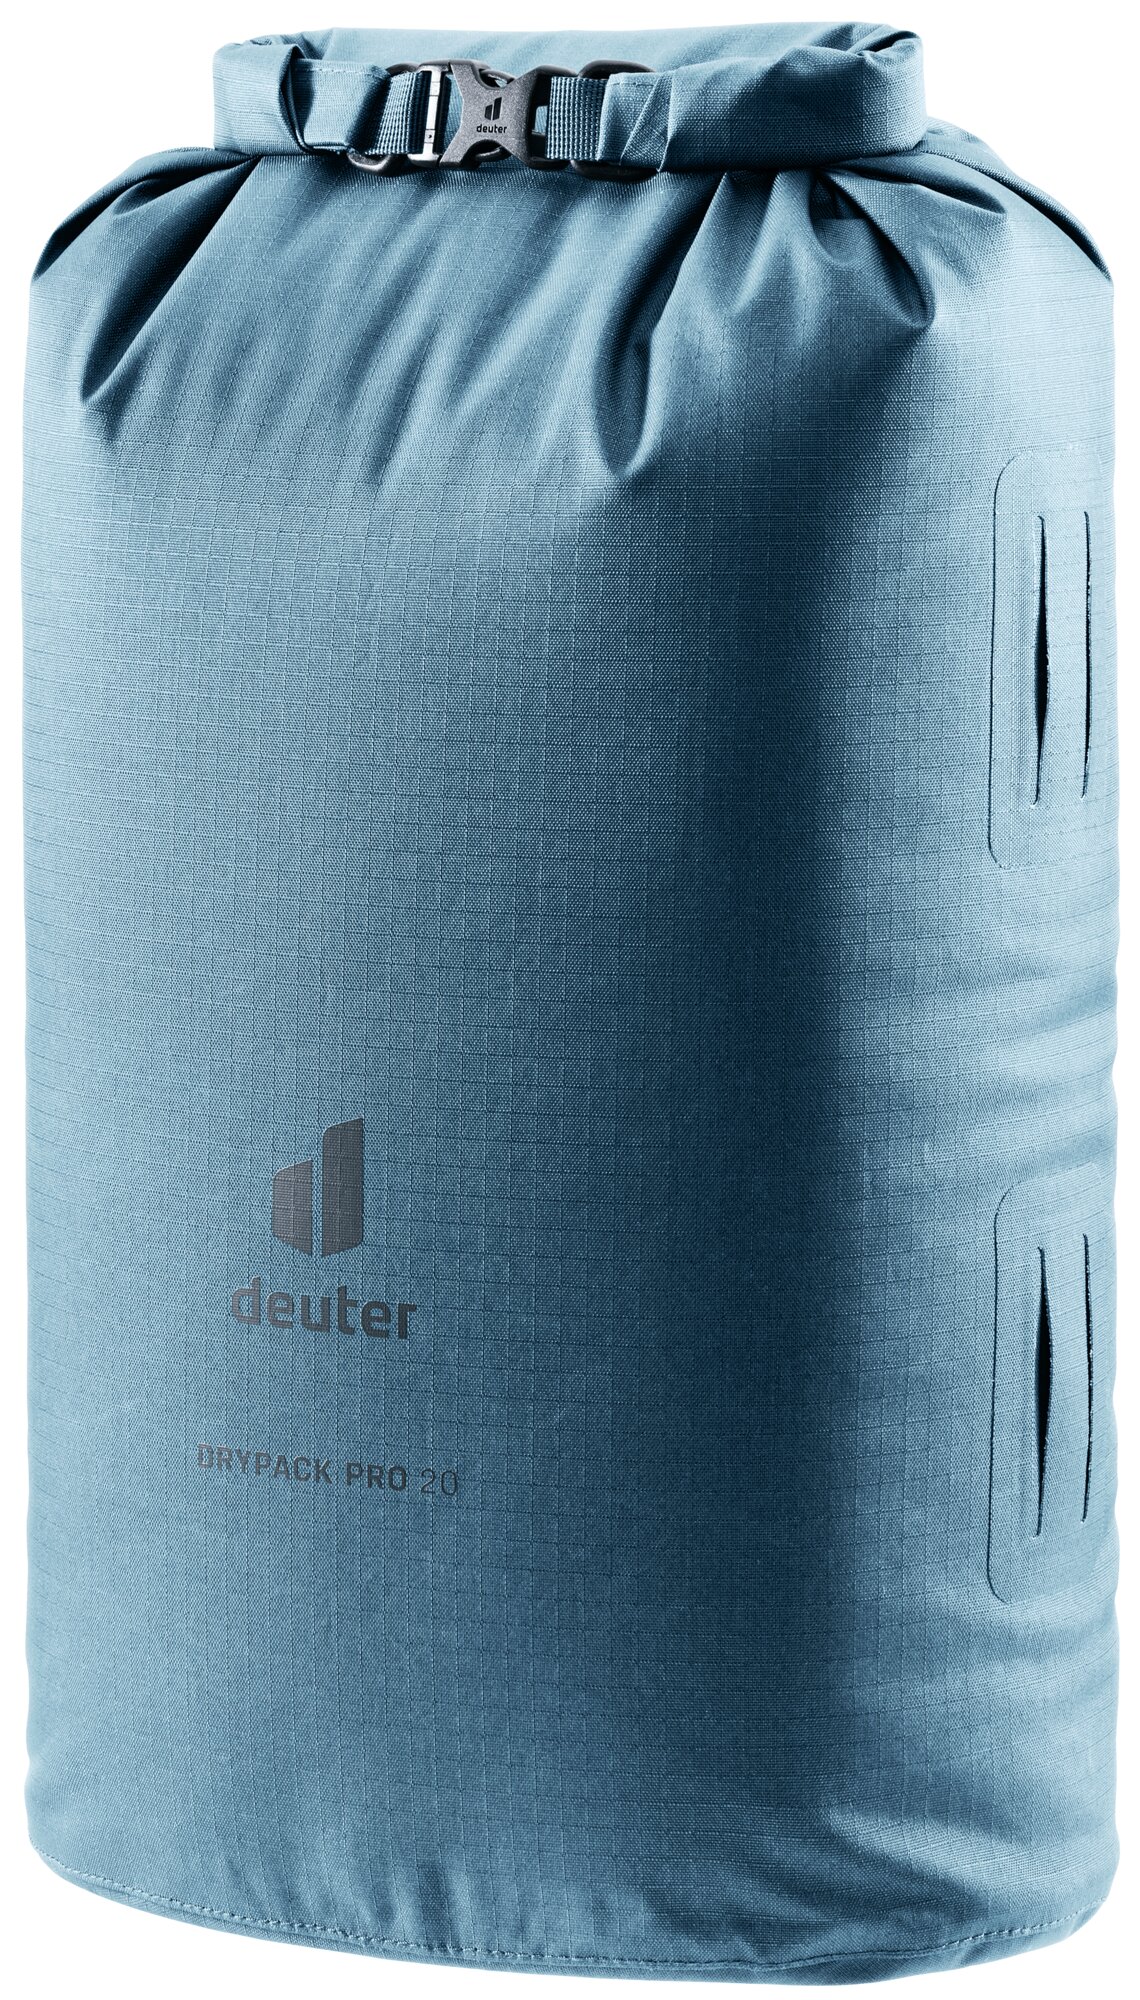 Deuter Drypack Pro 20 Atlantic